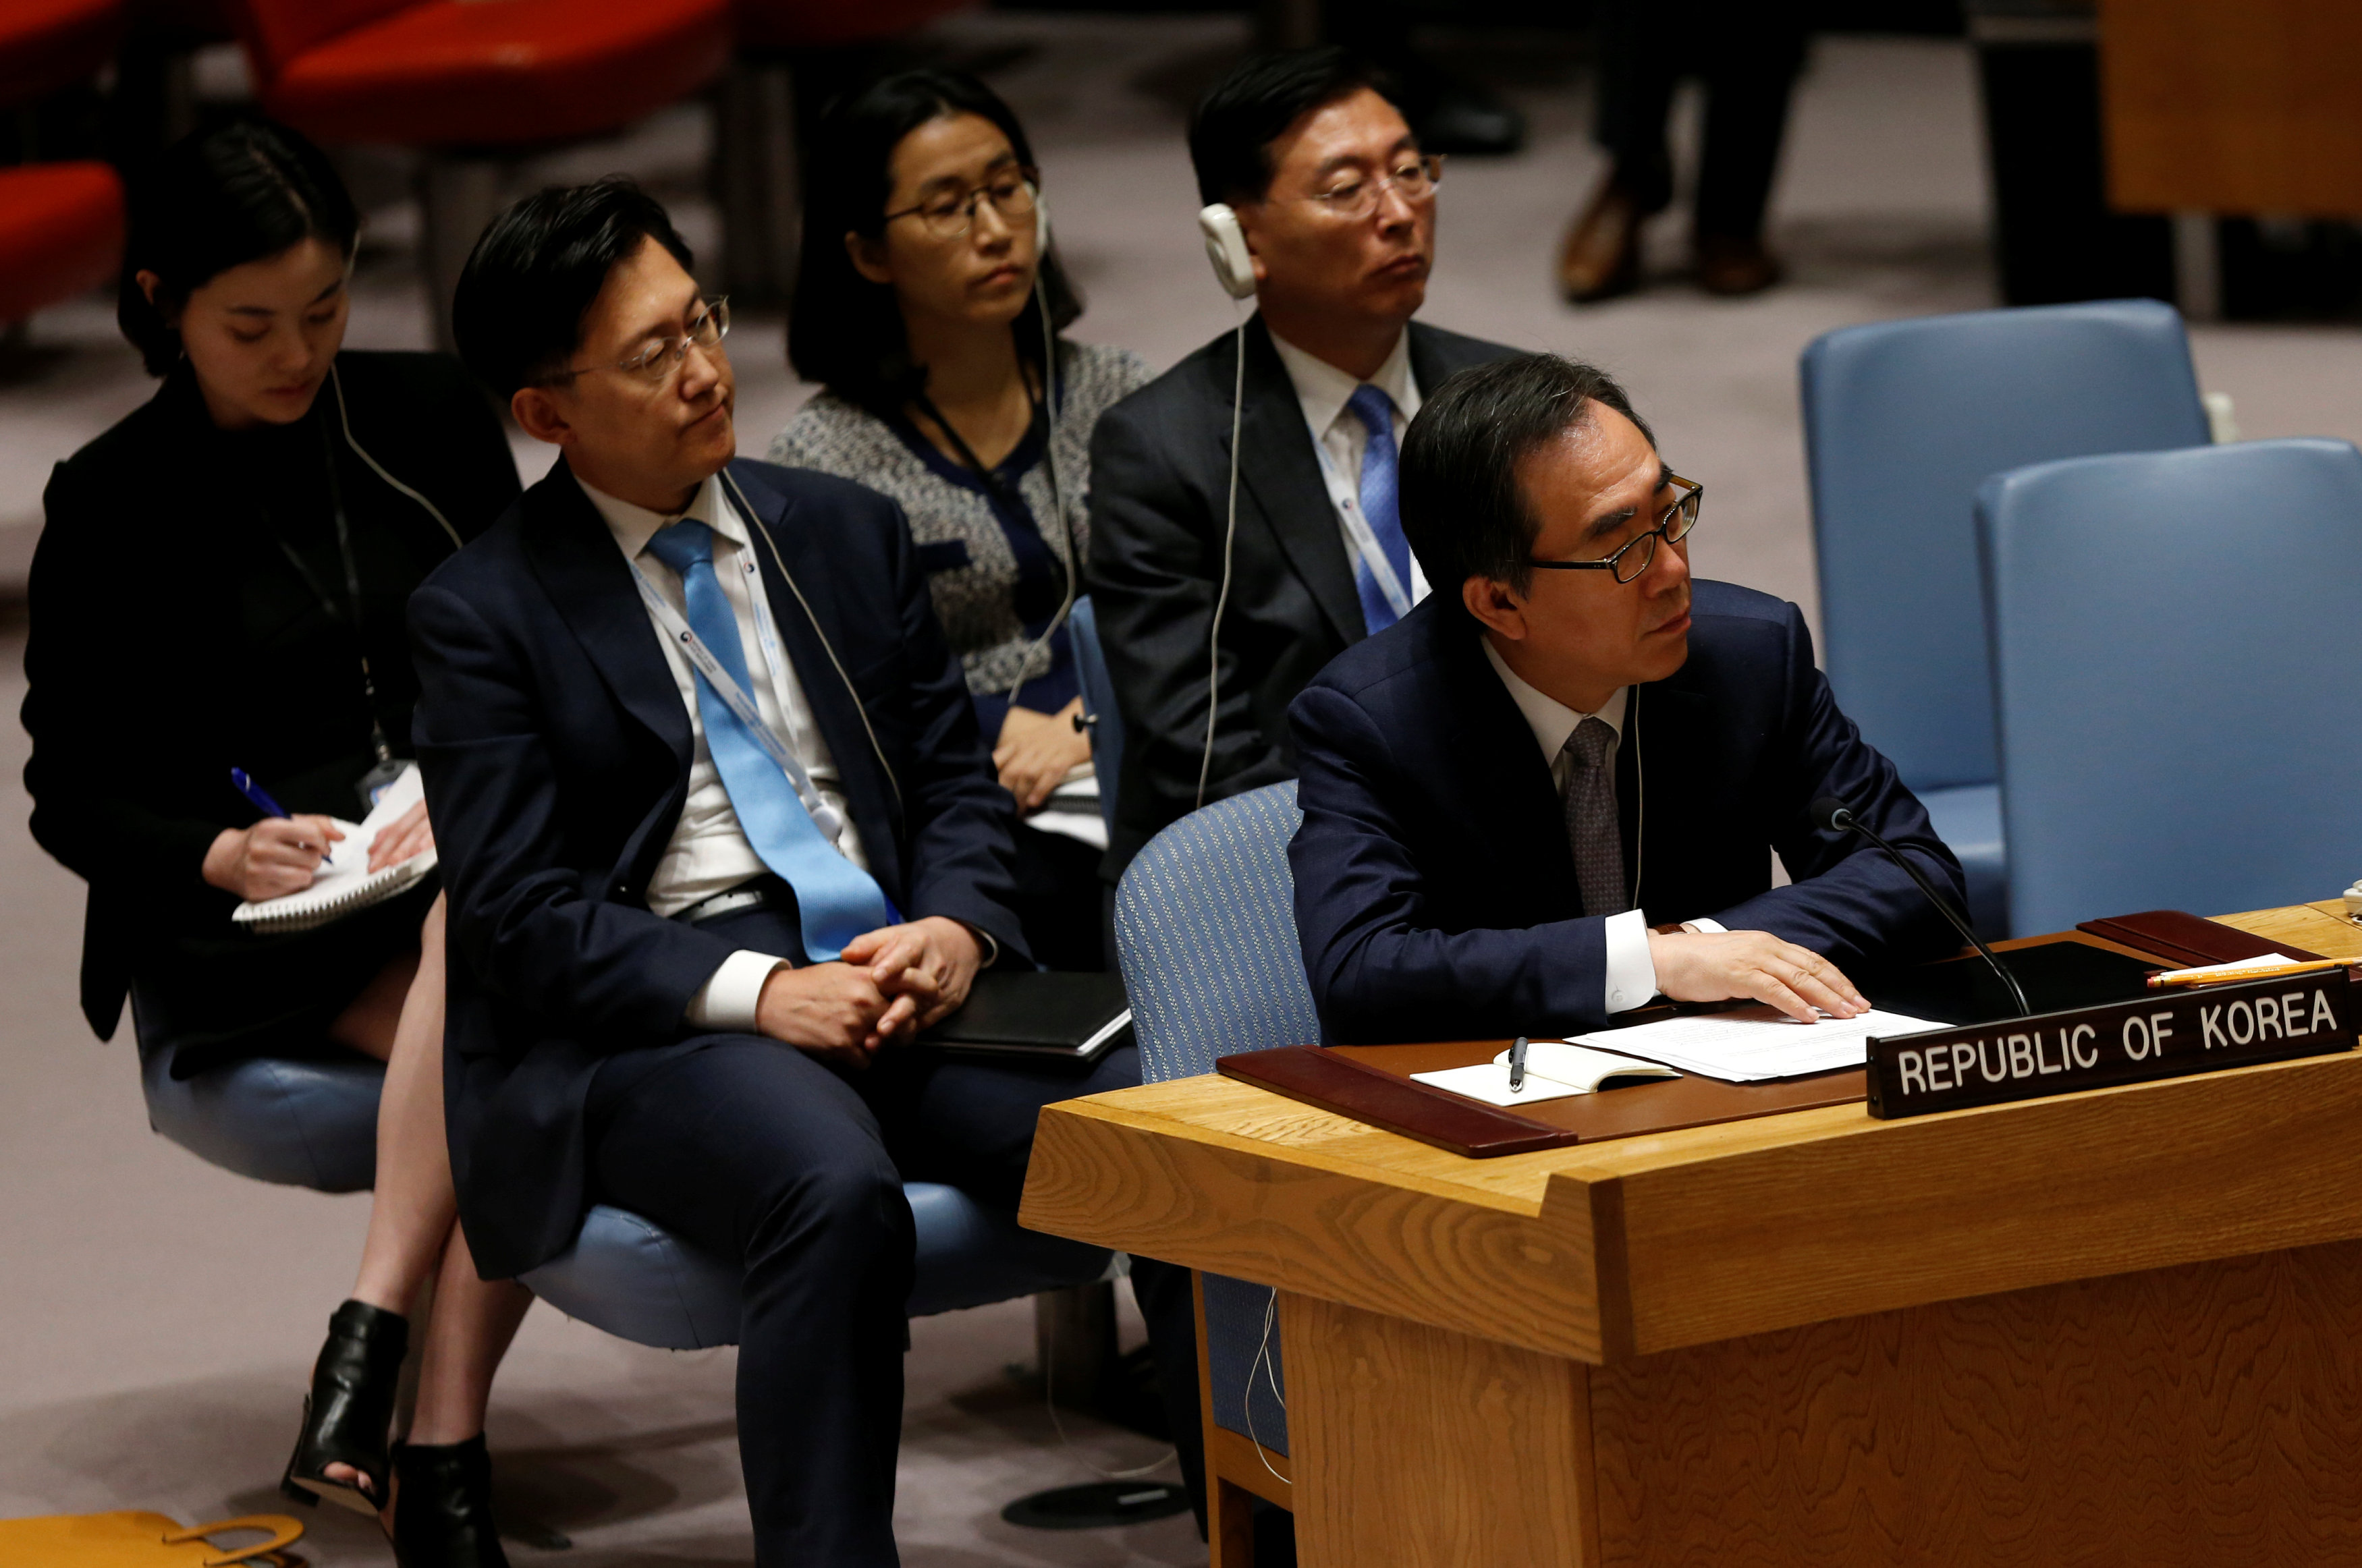 سفير كوريا الجنوبية لدى الامم المتحدة تشو